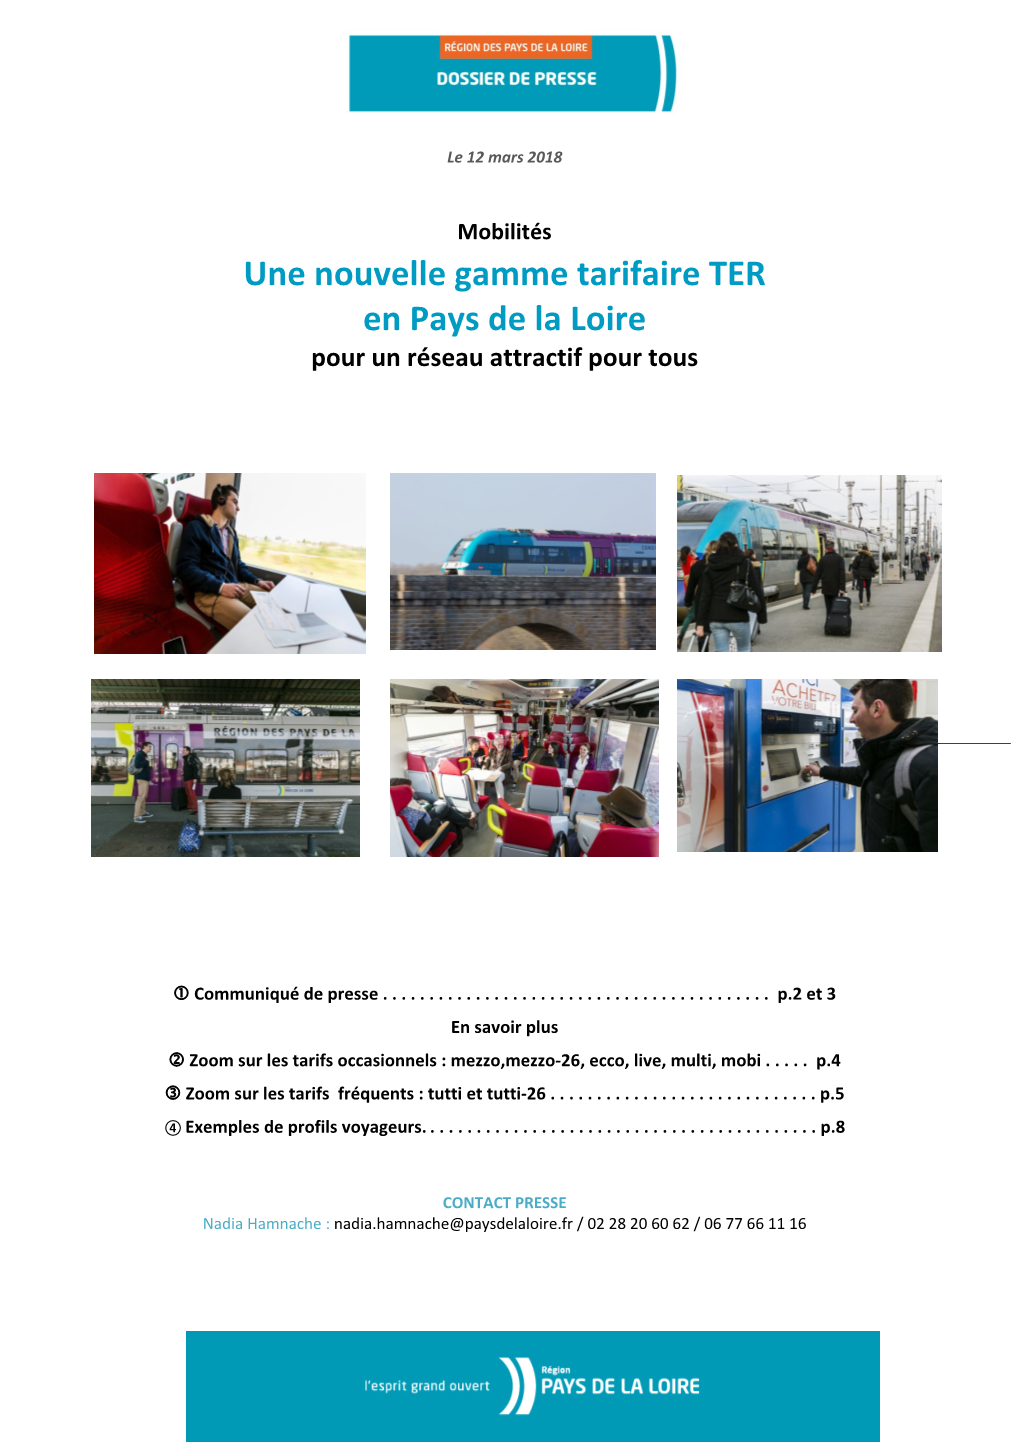 Une Nouvelle Gamme Tarifaire TER En Pays De La Loire Pour Un Réseau Attractif Pour Tous